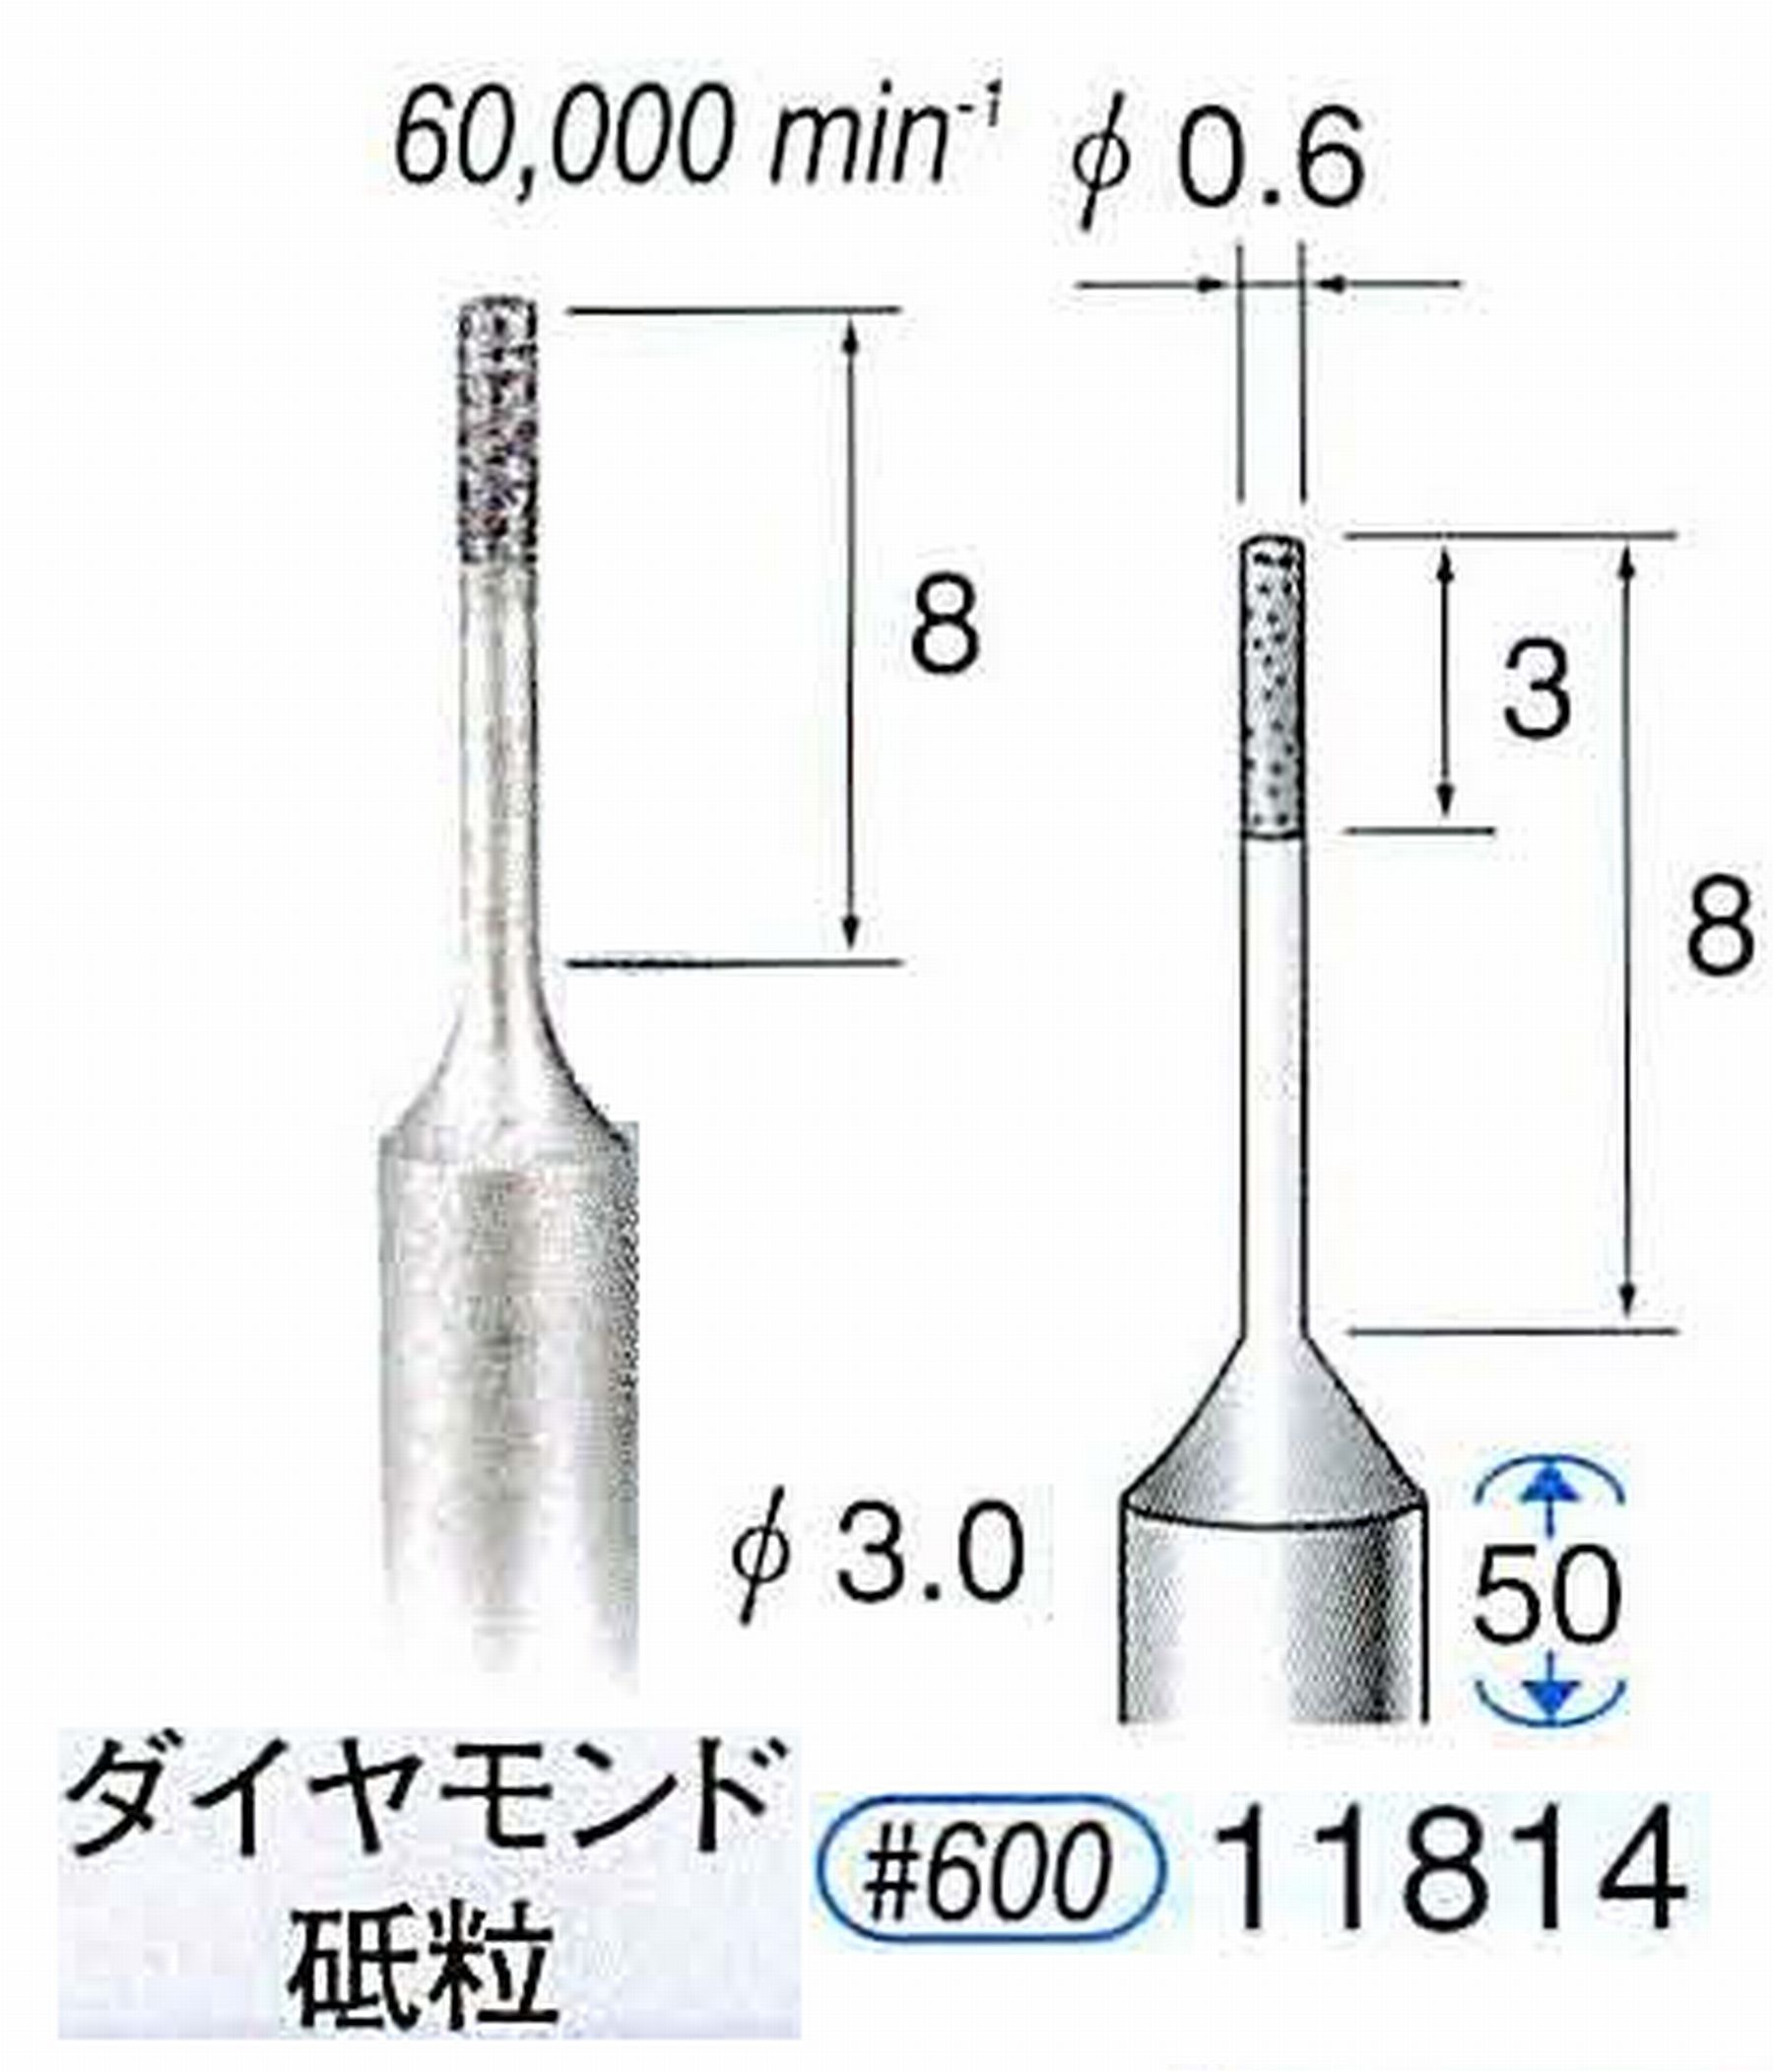 ナカニシ/NAKANISHI SP電着ダイヤモンド ダイヤモンド砥粒 軸径(シャンク)φ3.0mm 11814